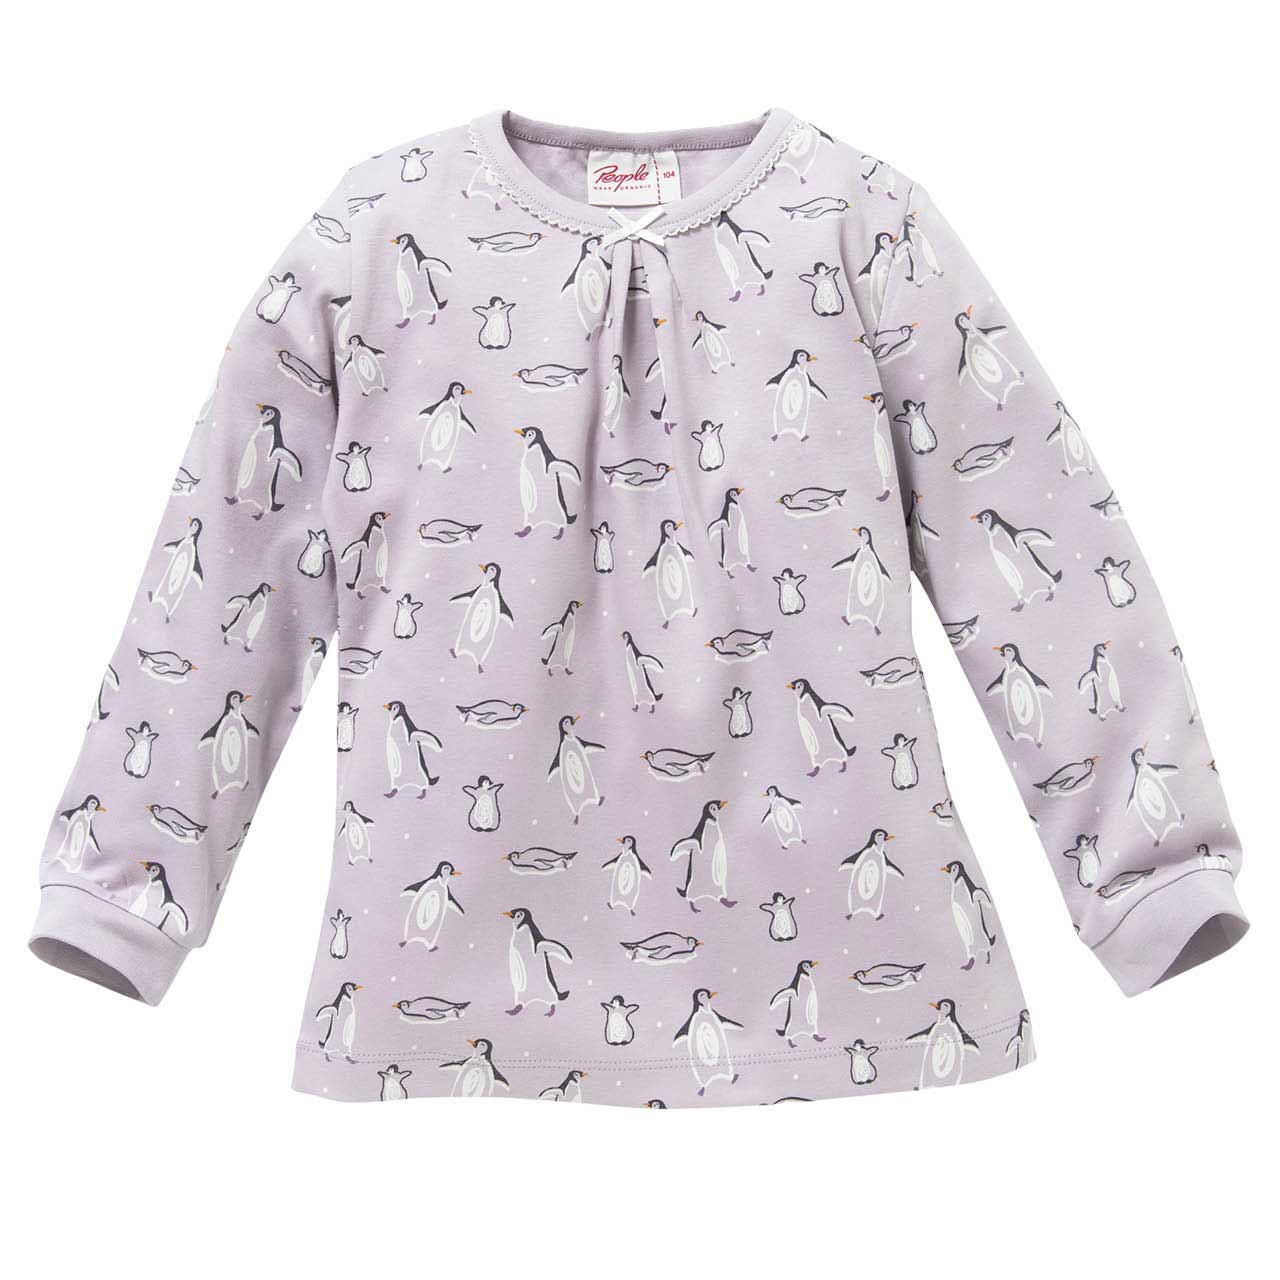 Weicher Schlafanzug Pinguine lavendel